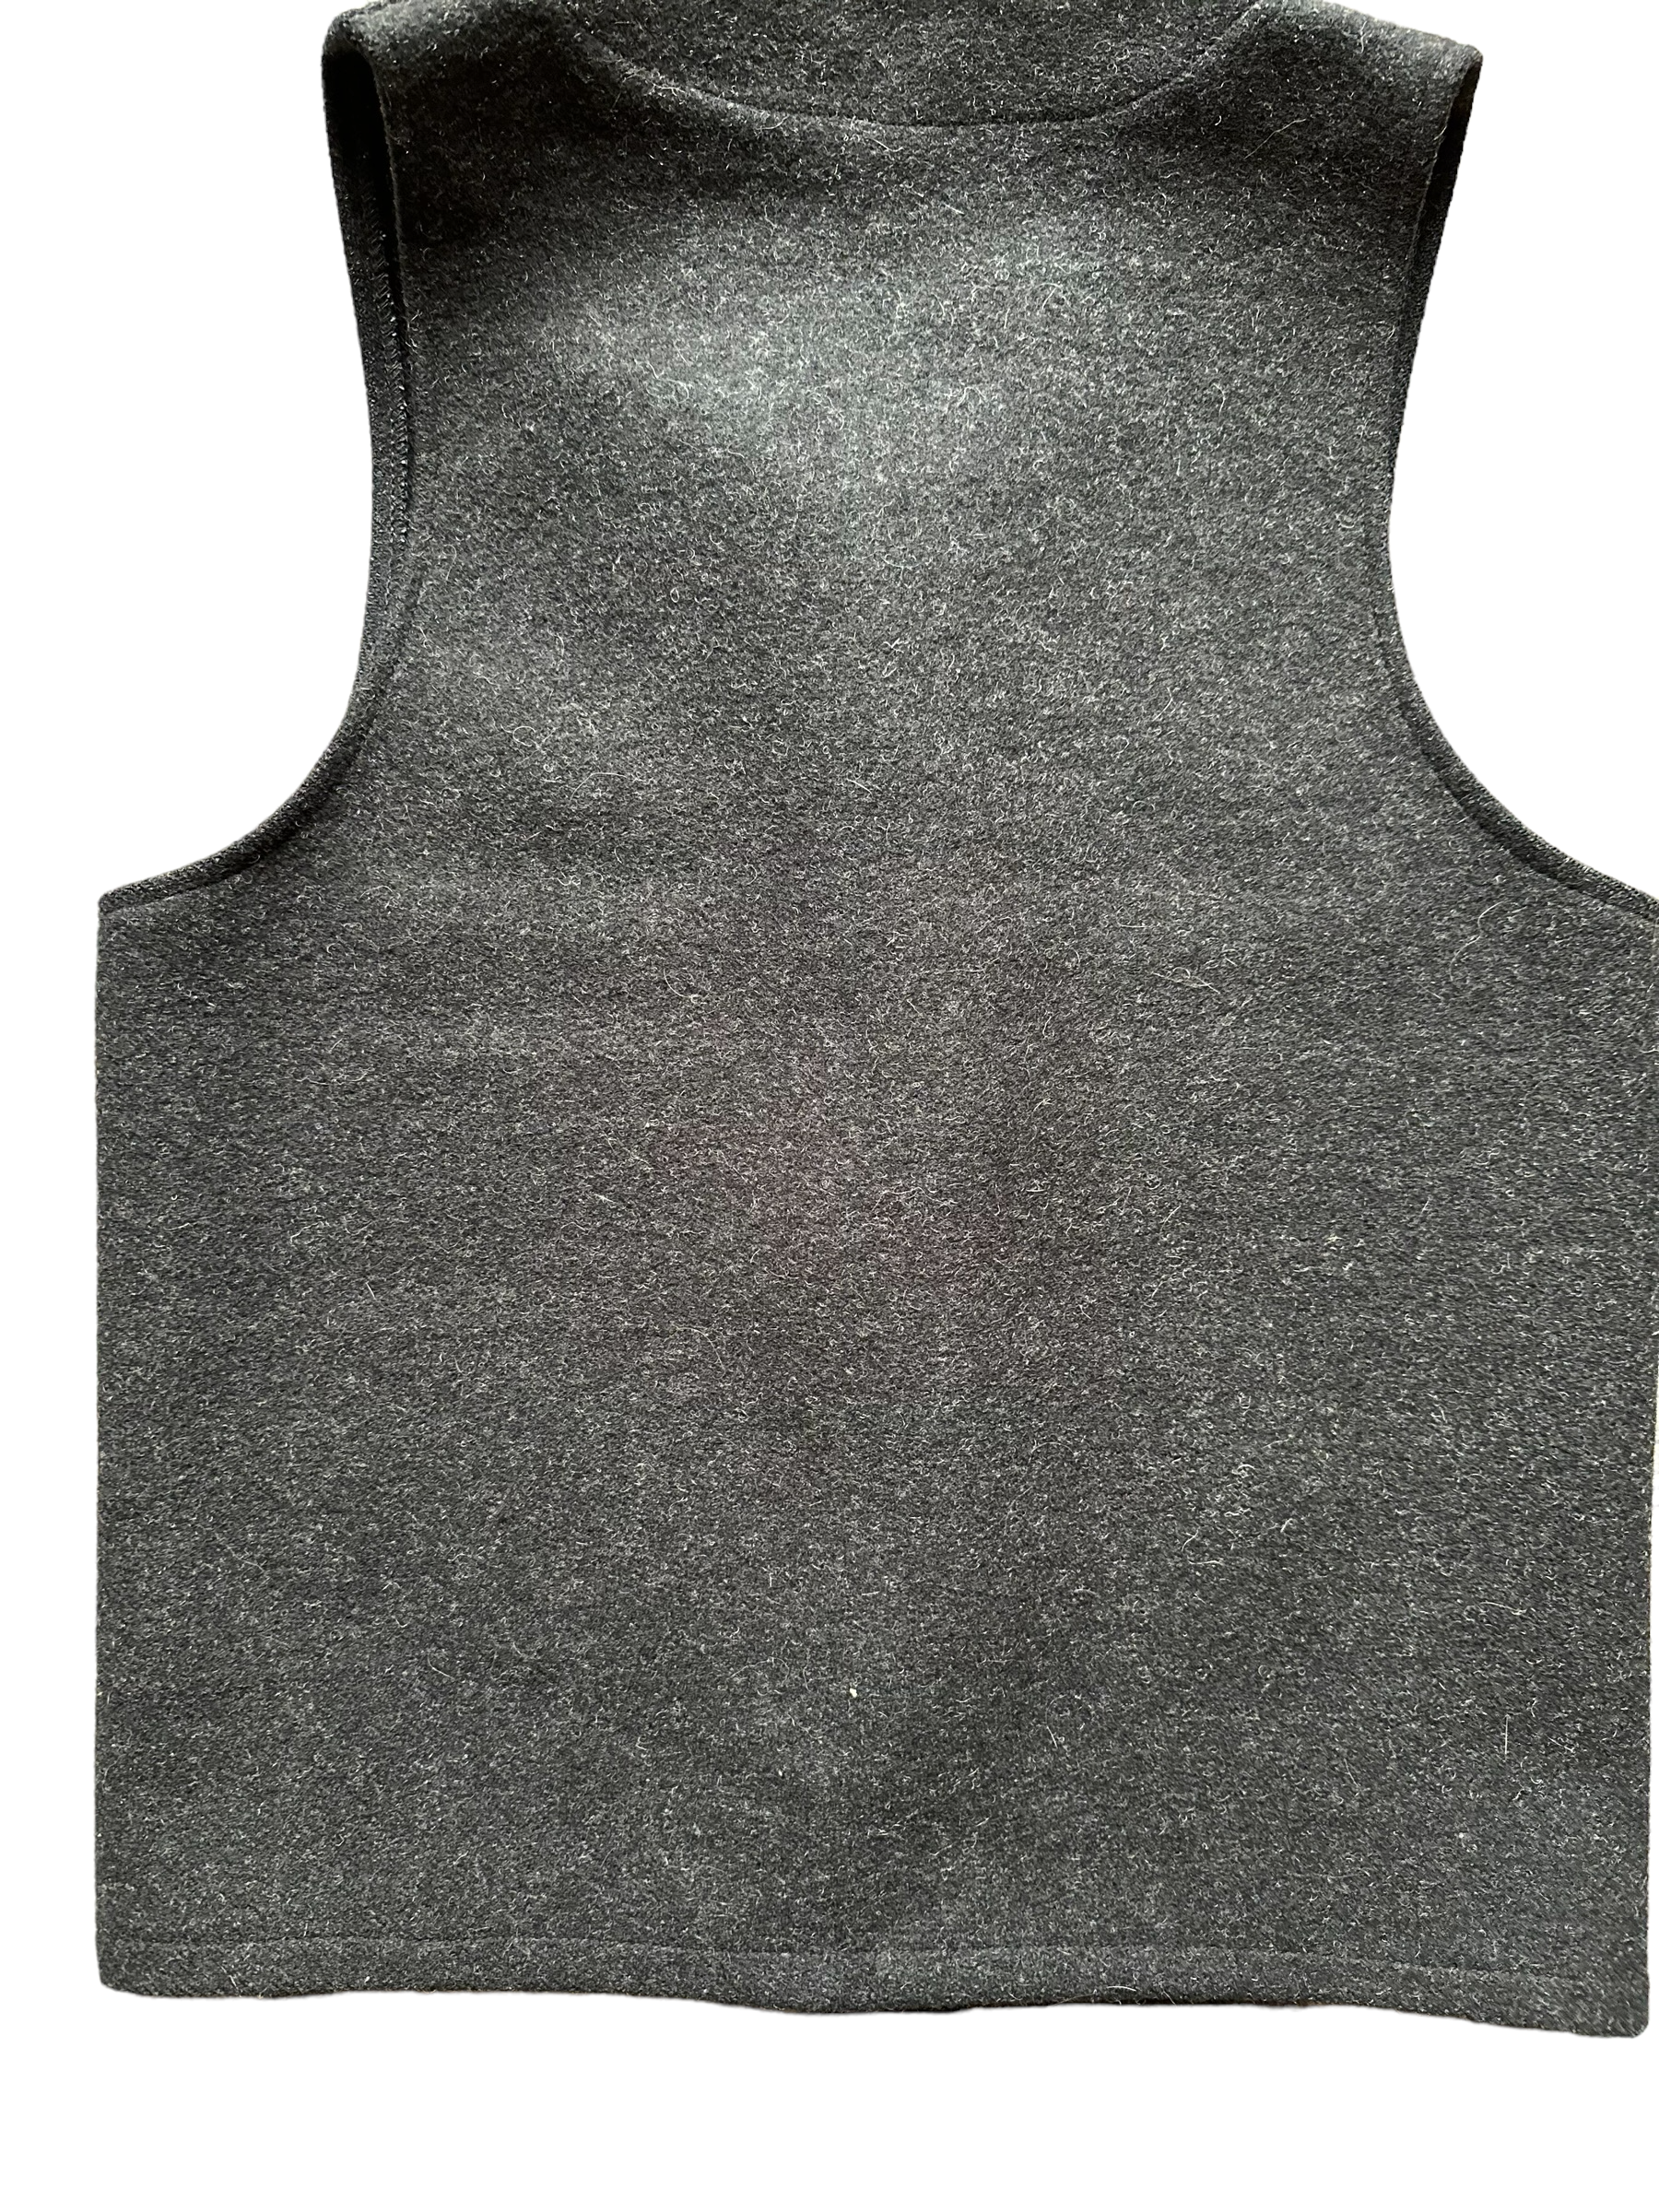 Lower Rear View of Vintage Filson Mackinaw Vest SZ 36 |  Charcoal Grey Wool Vest | Vintage Seattle Workwear